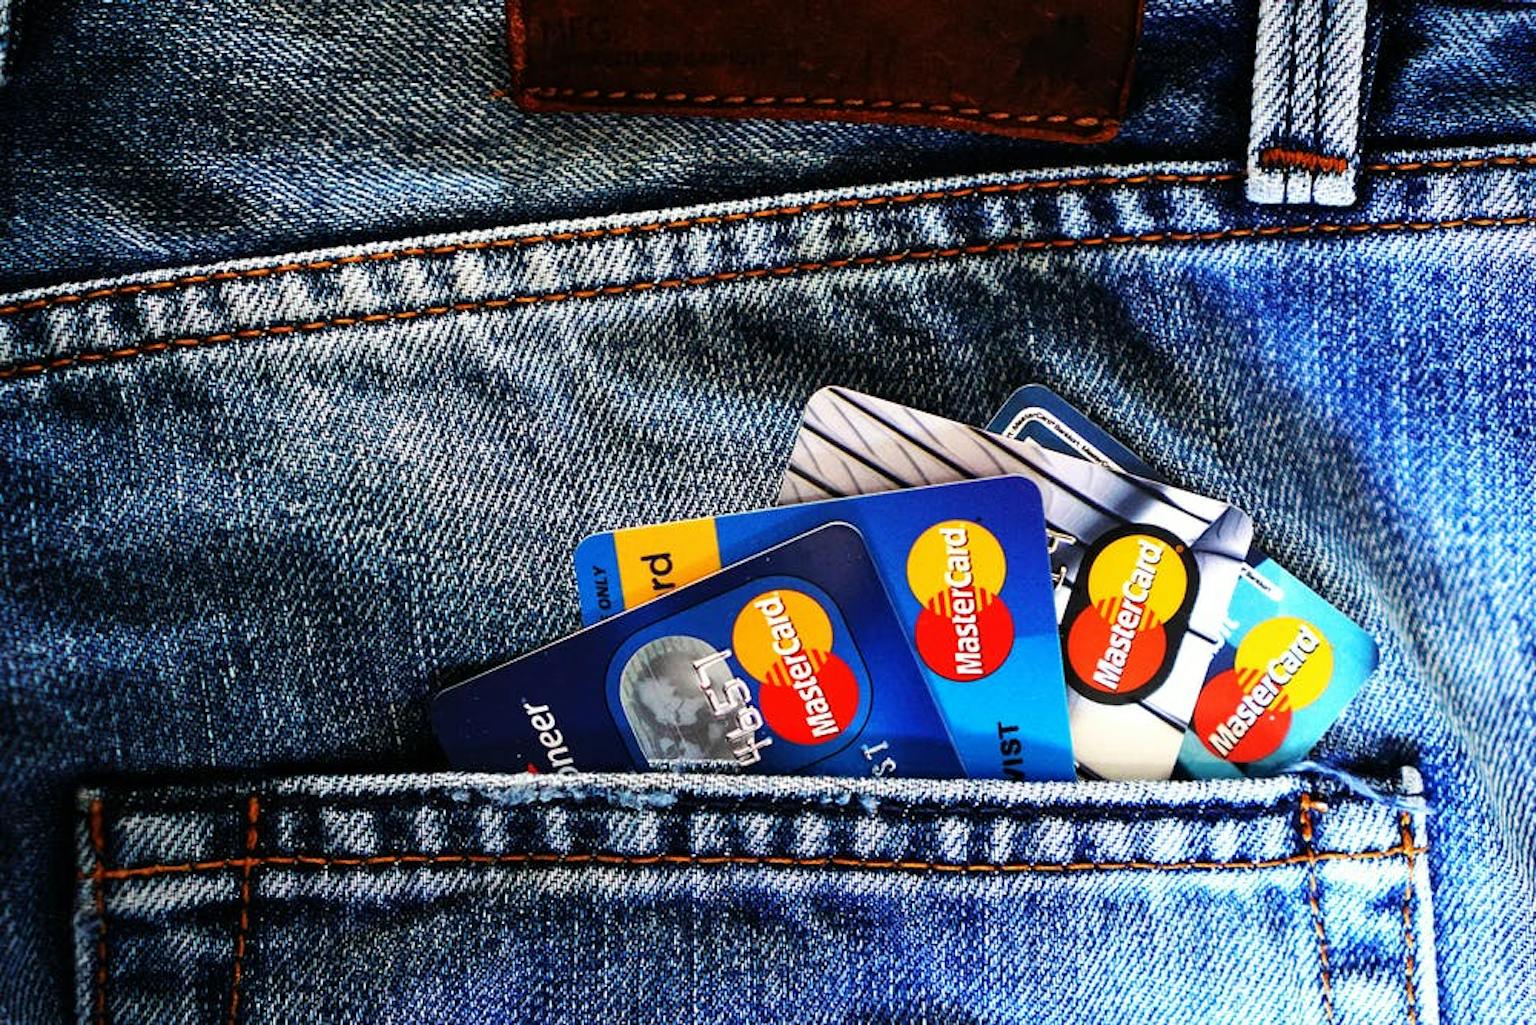 Perbedaan Manfaat Dari Kartu Debit vs Kartu Kredit, Sudah Tahu?